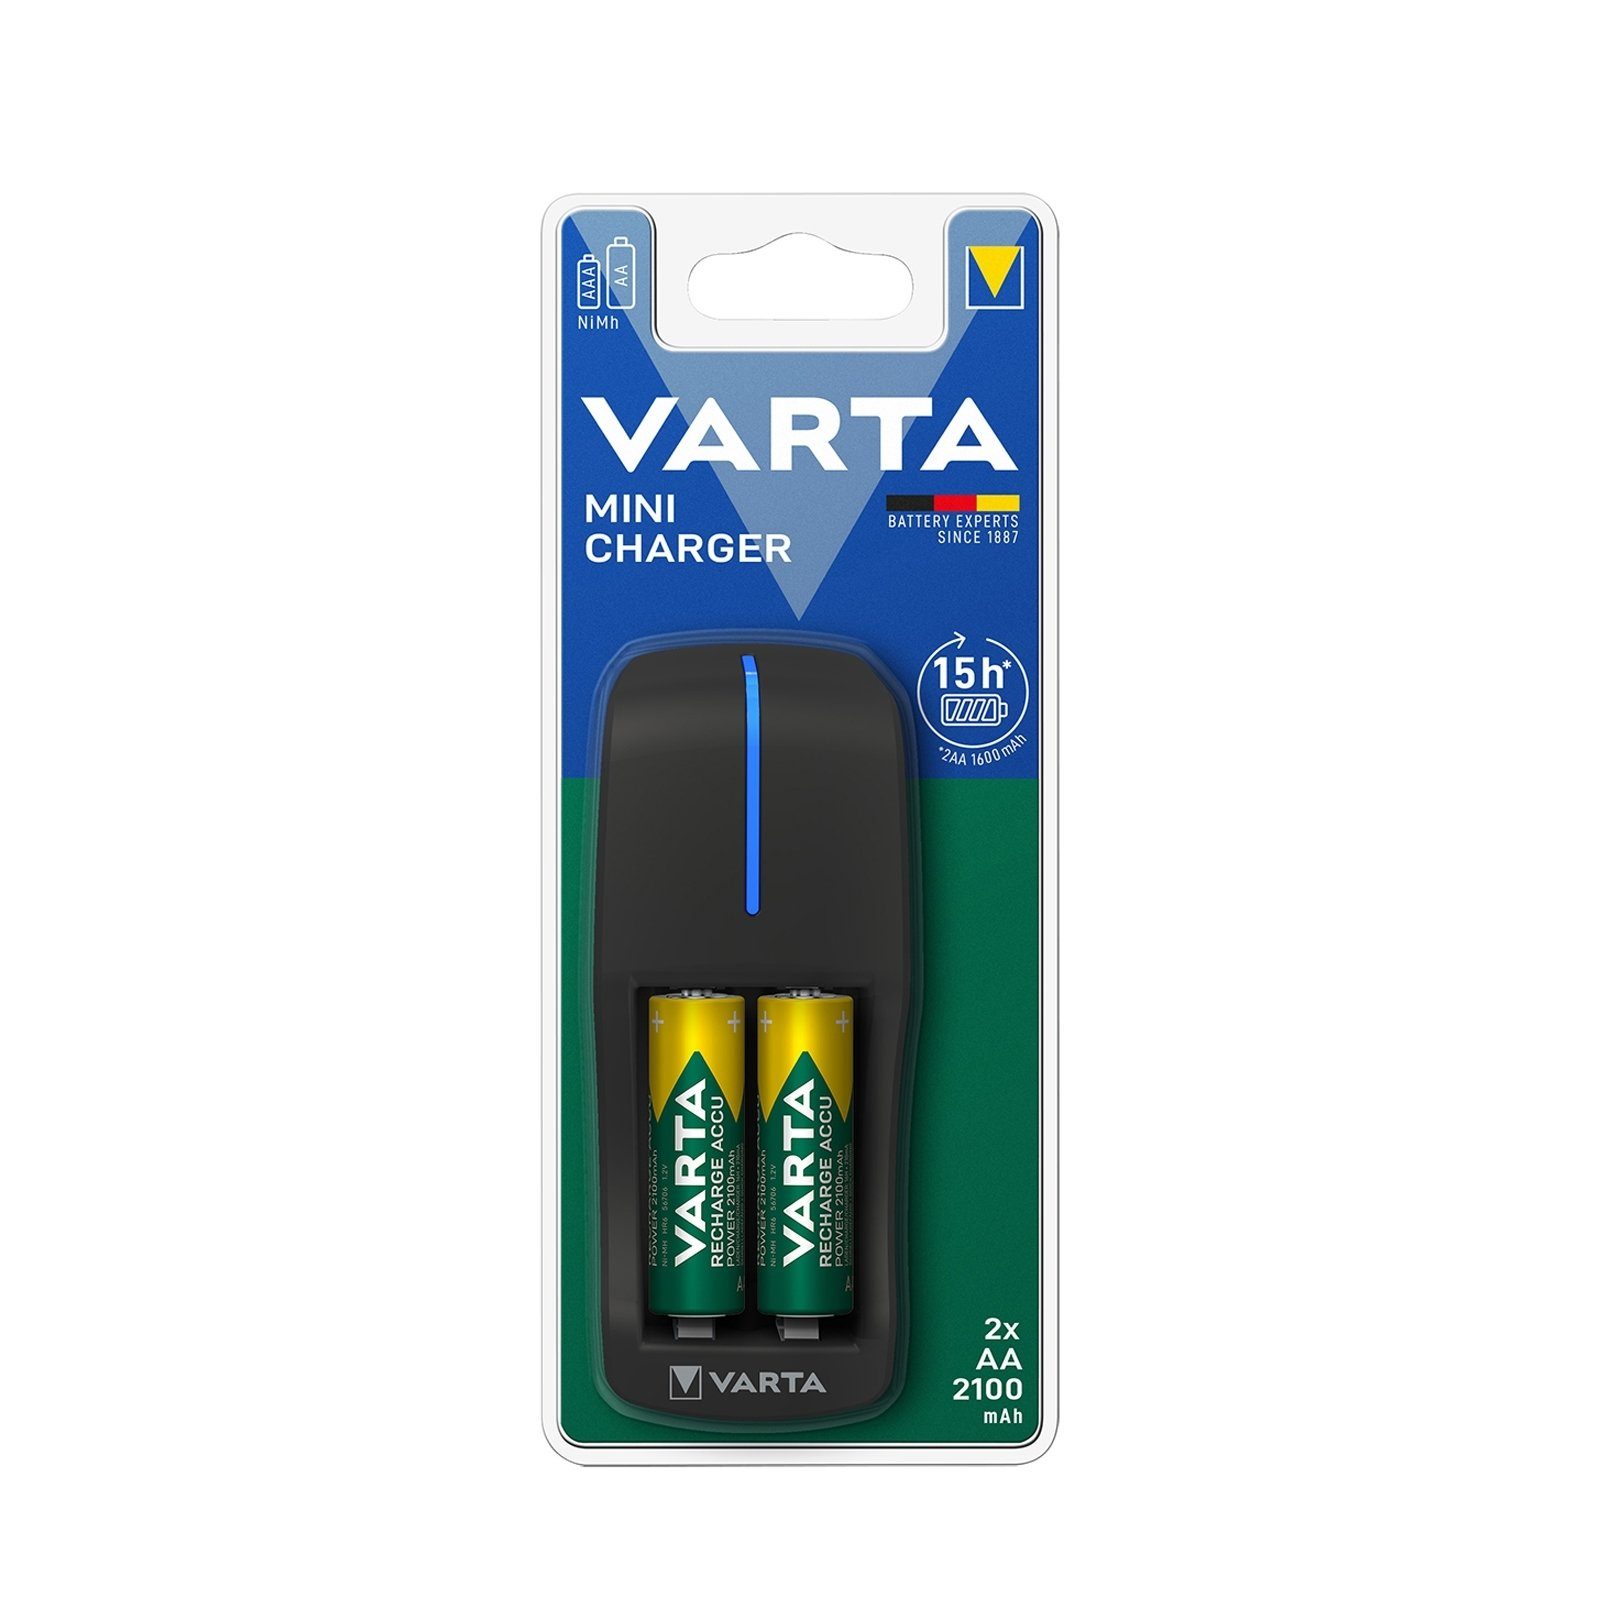 Batterie-Ladegerät VARTA Mini für Ladegerät und AAA AA